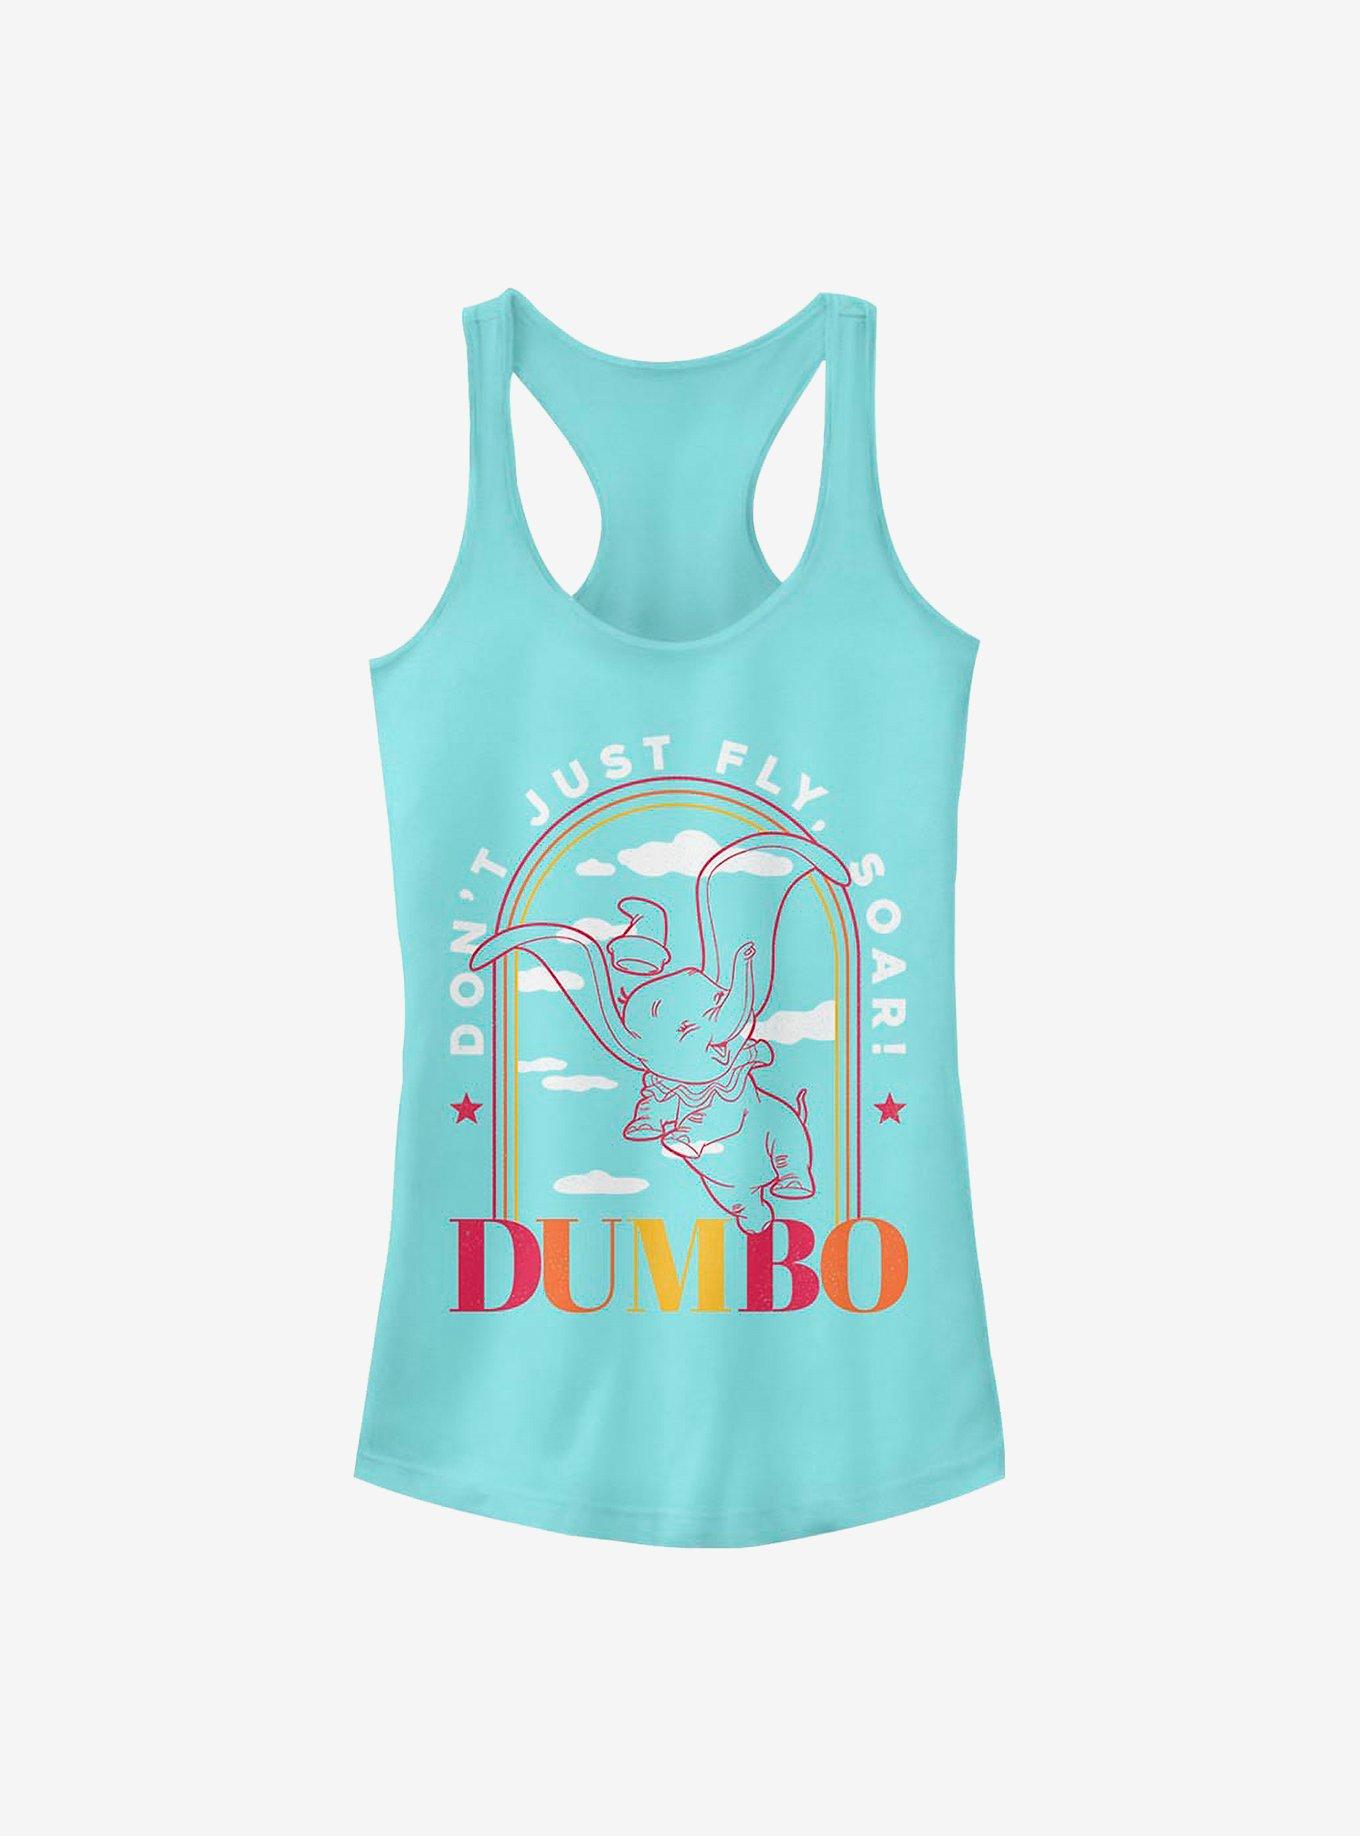 Disney Dumbo Soaring Arch Girls Tank